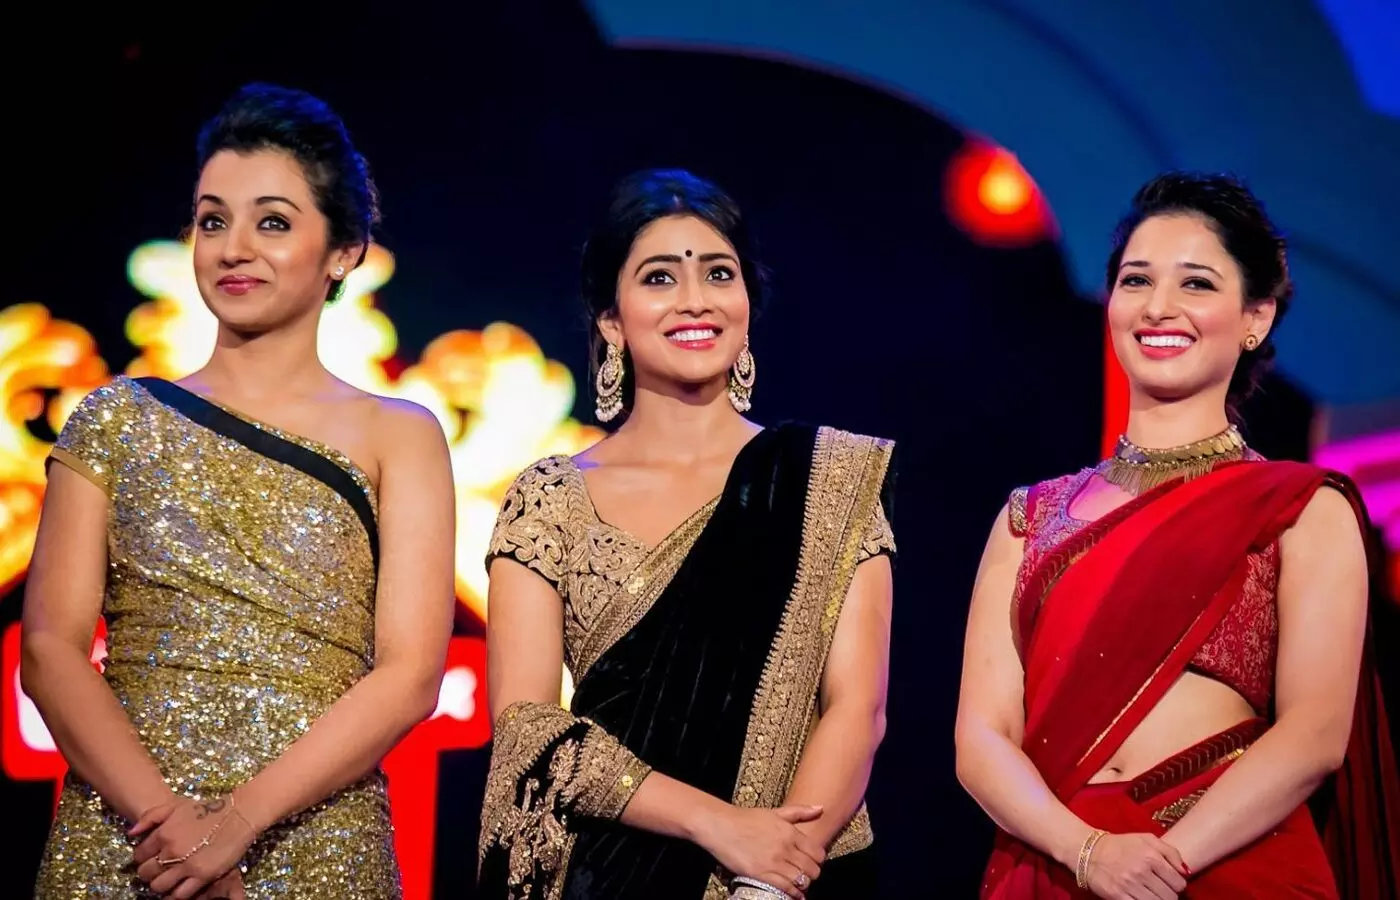 Top 20 Beautiful South Indian Actresses Names And Photos